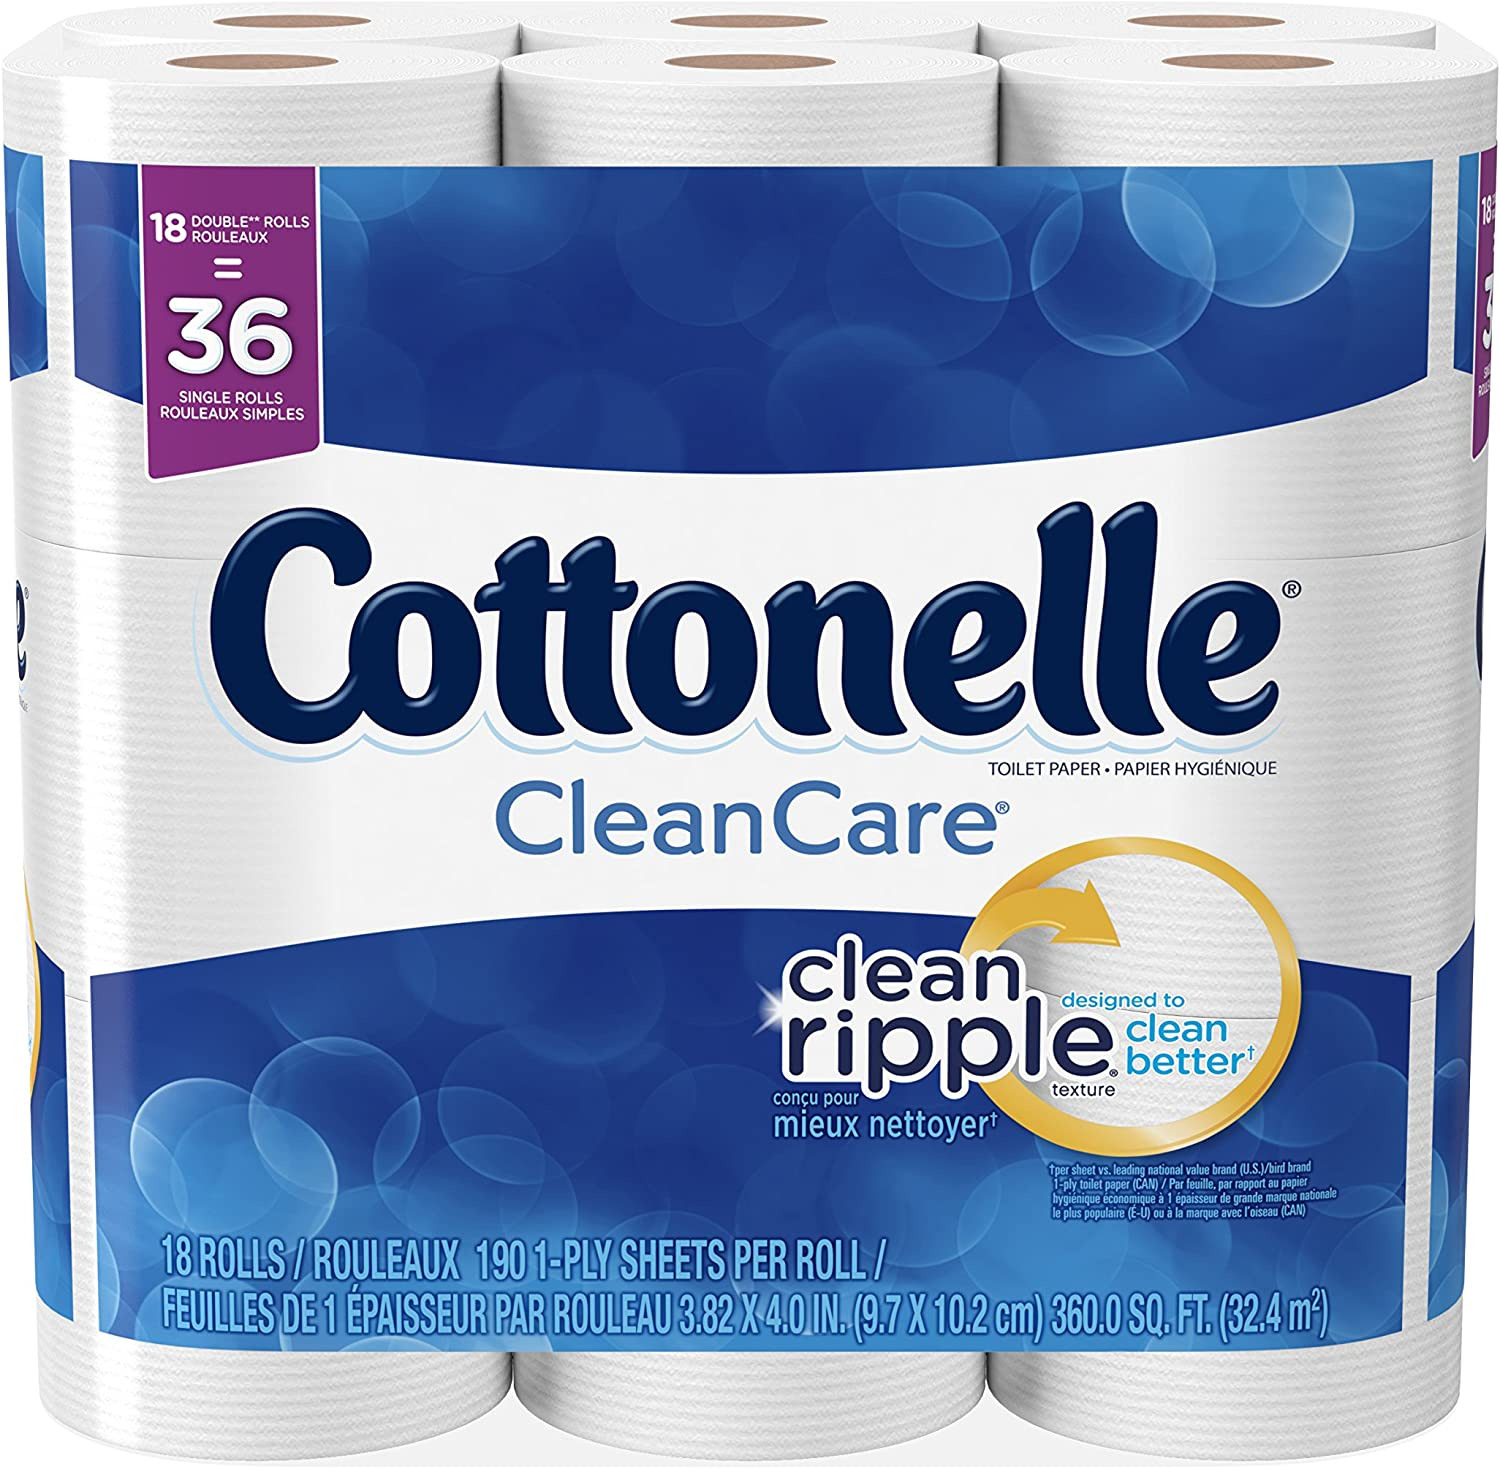 Cottonelle Cleancare Toilet Paper, 18 Double Rolls, Strong Bath Tissue